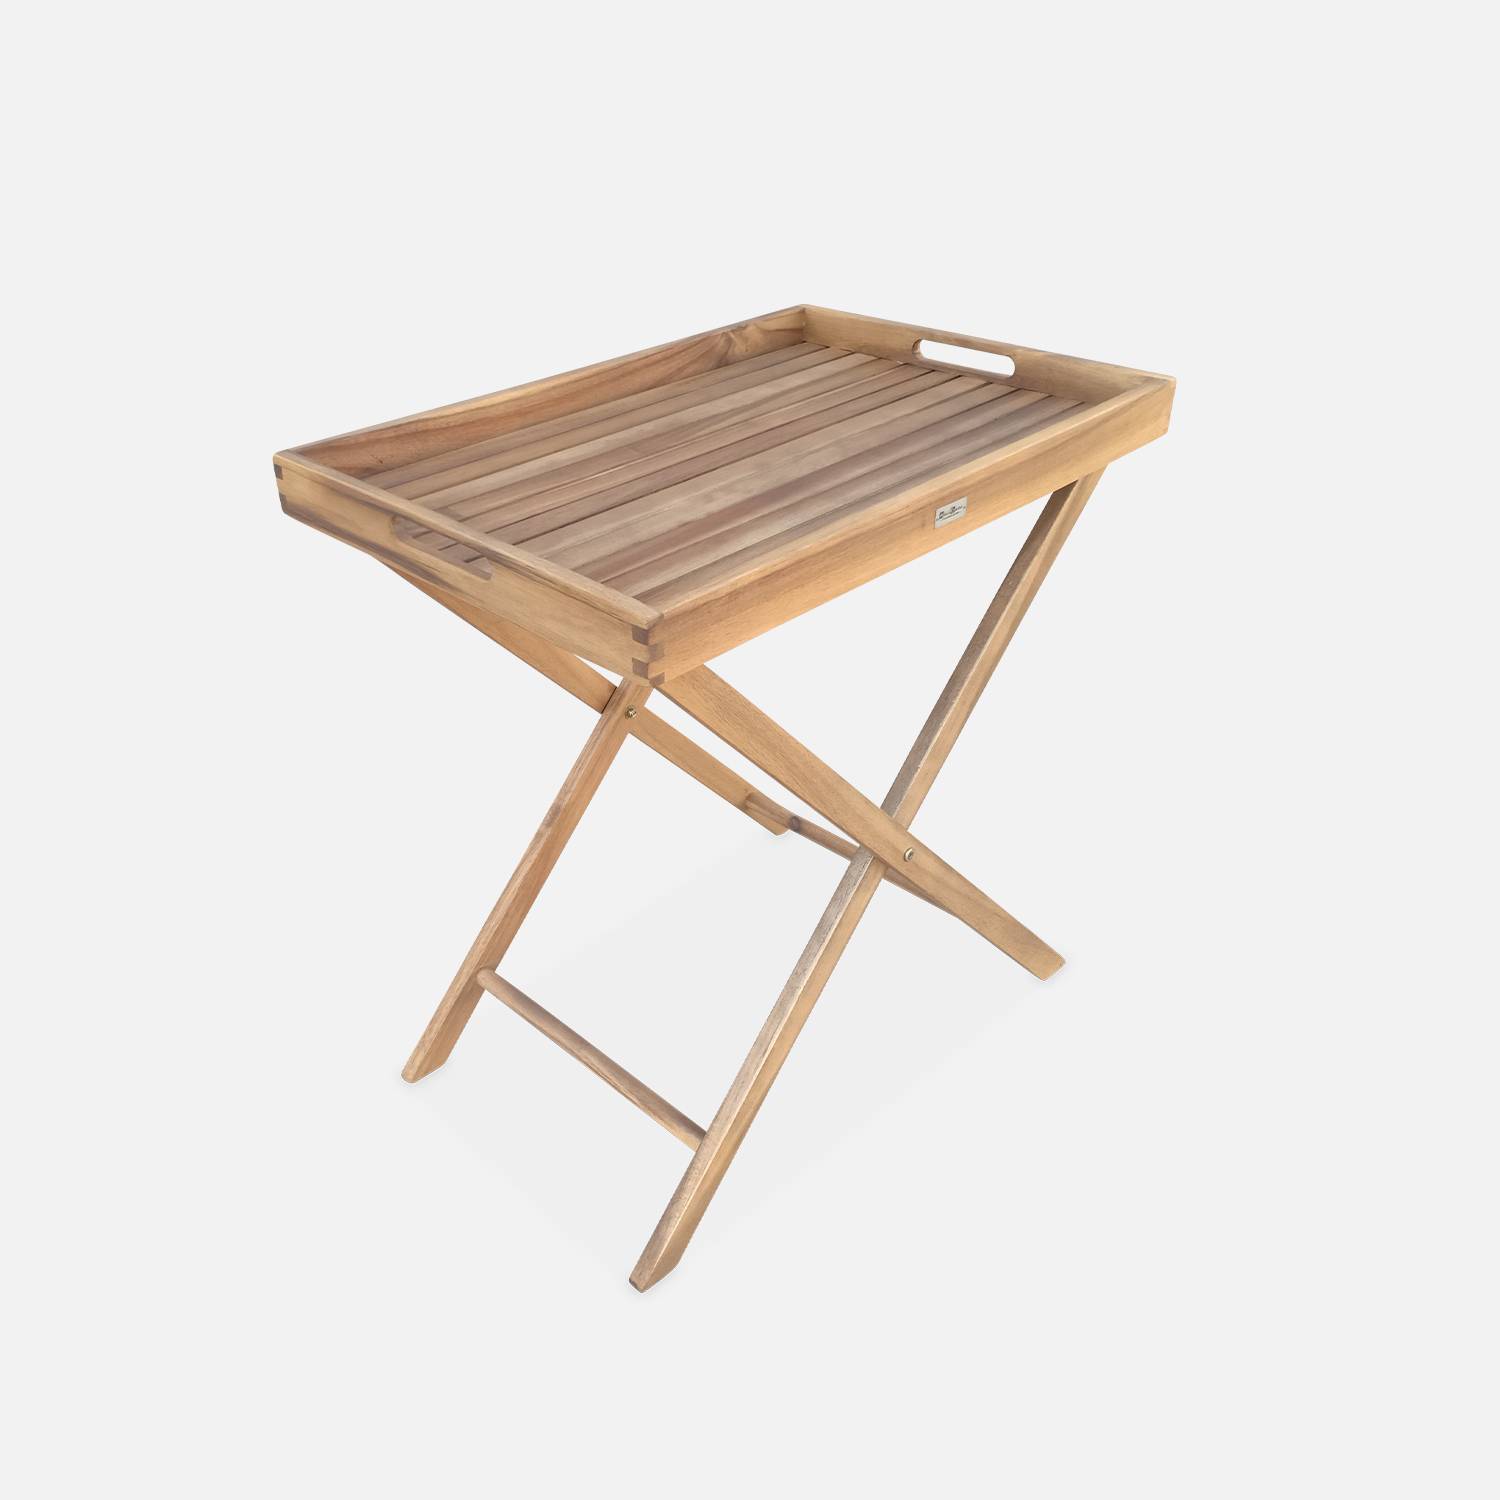 Tavolino da giardino, in legno, dimensioni: 68x44cm - modello: Murcia - Ripiano rimovibile su supporto, tavolo complementare, tavolino basso Photo3